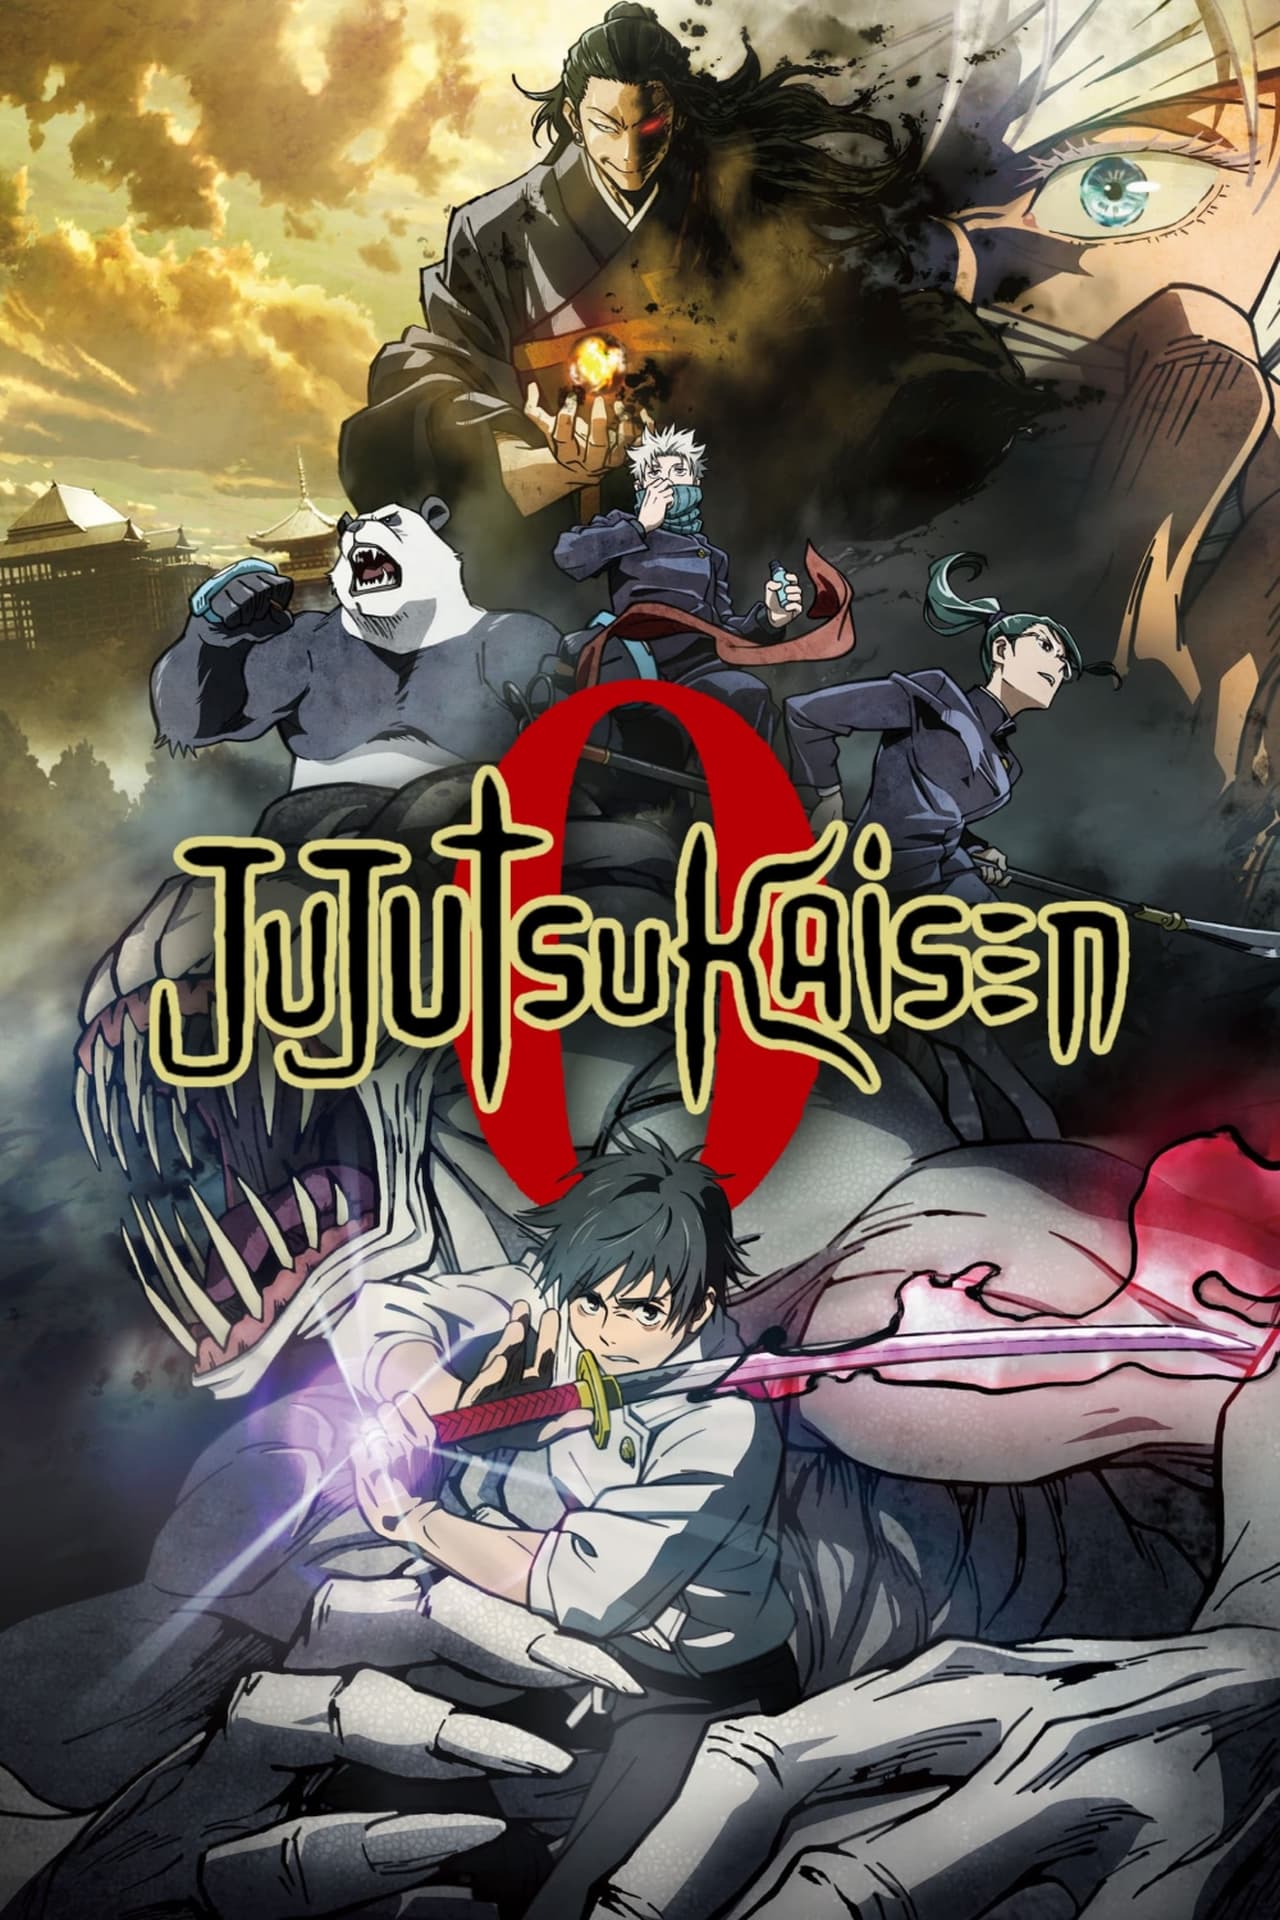 Jujutsu Kaisen 0: The Movie on Netflix